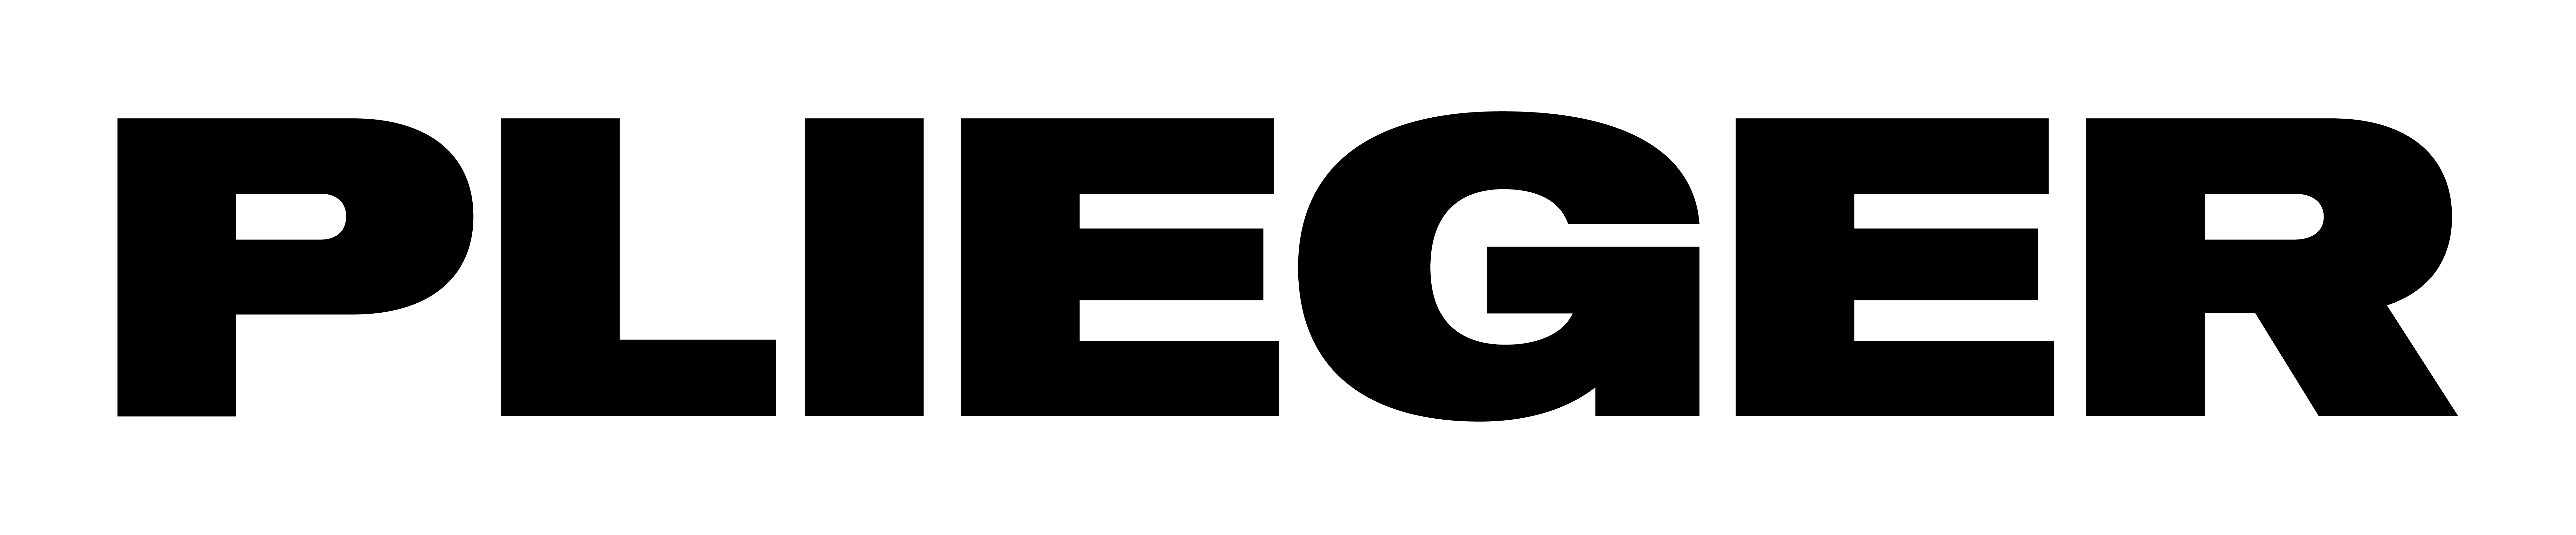 Plieger logo